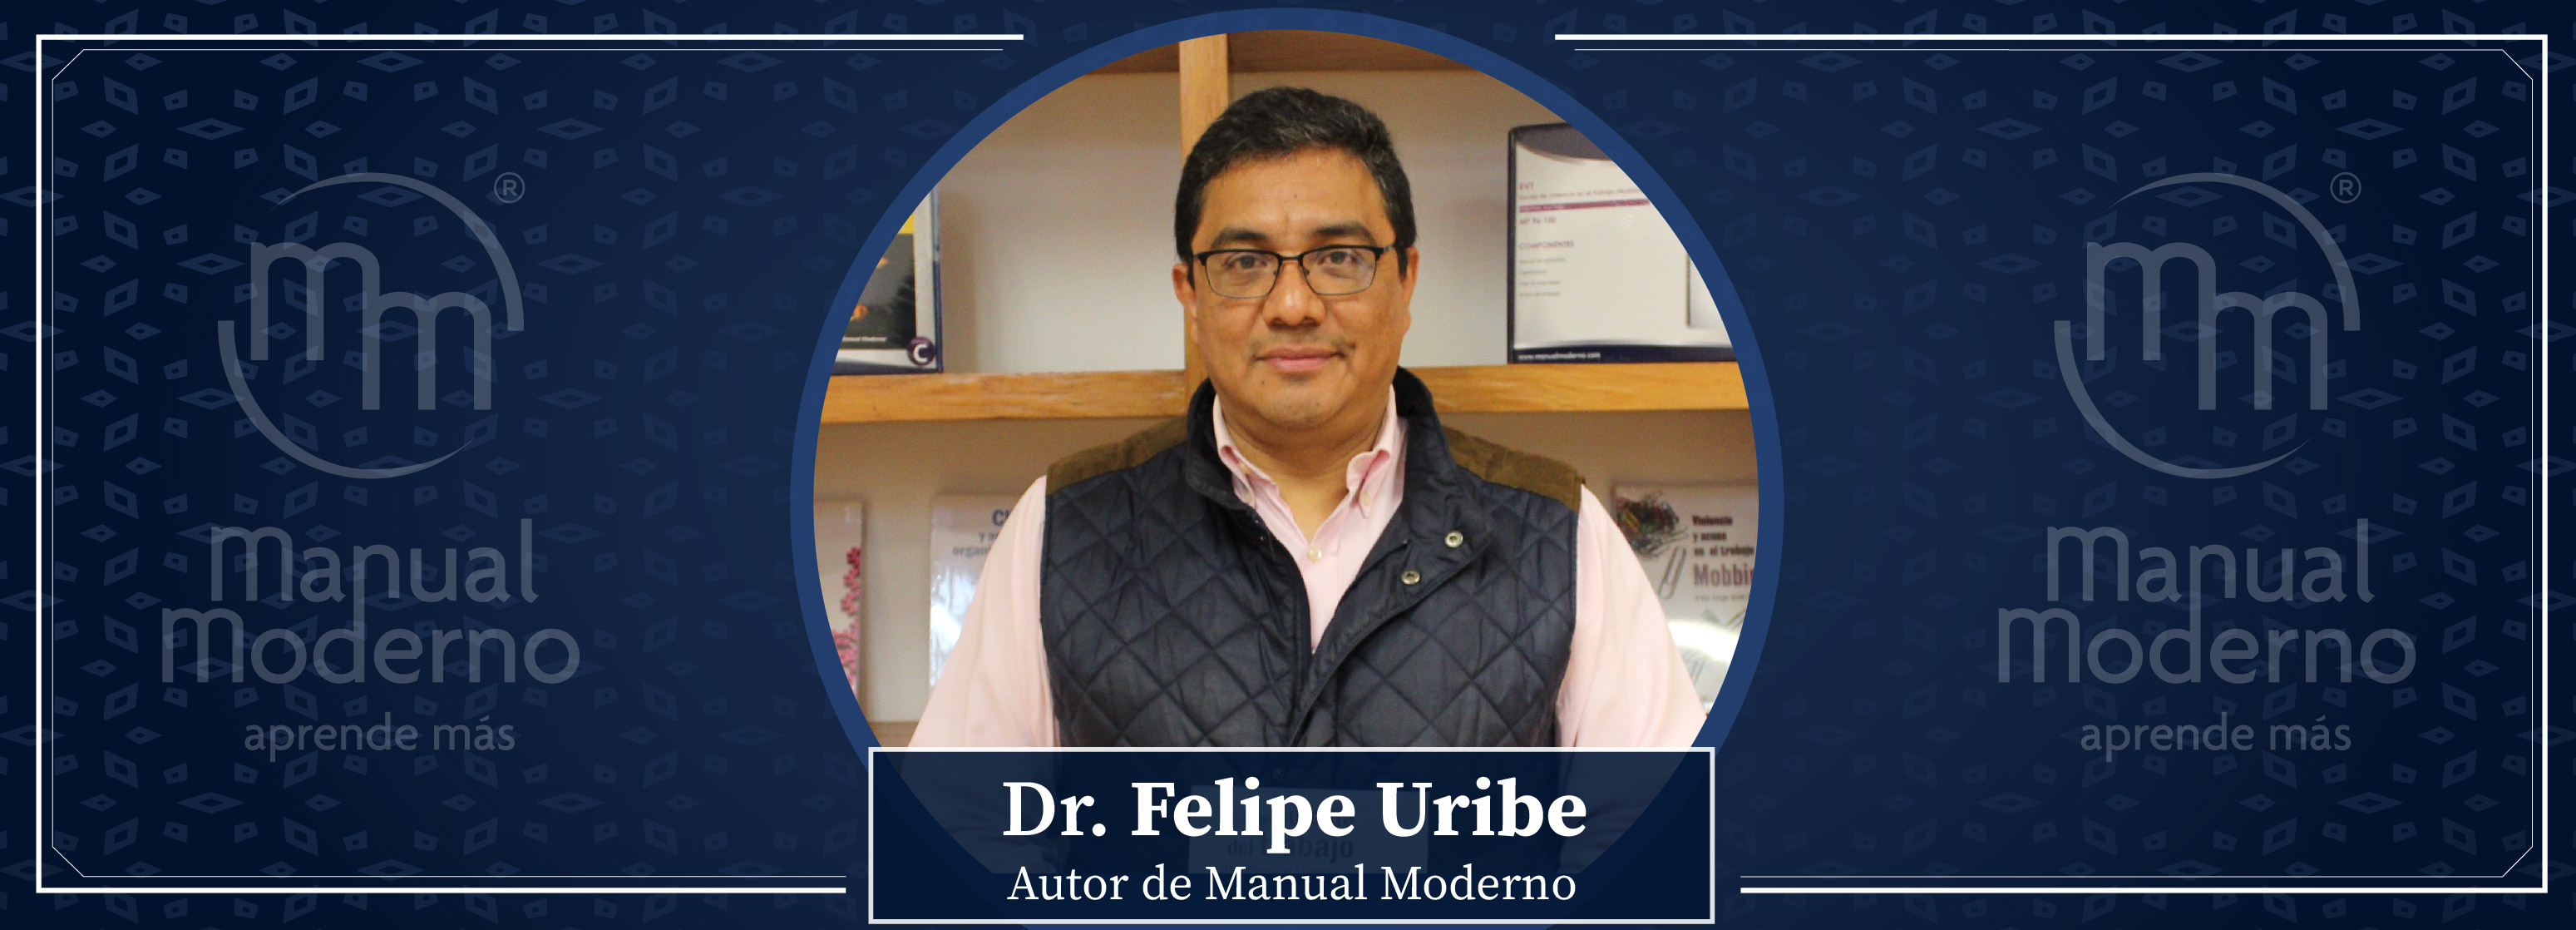 Nuestros Autores. Dr. Felipe Uribe